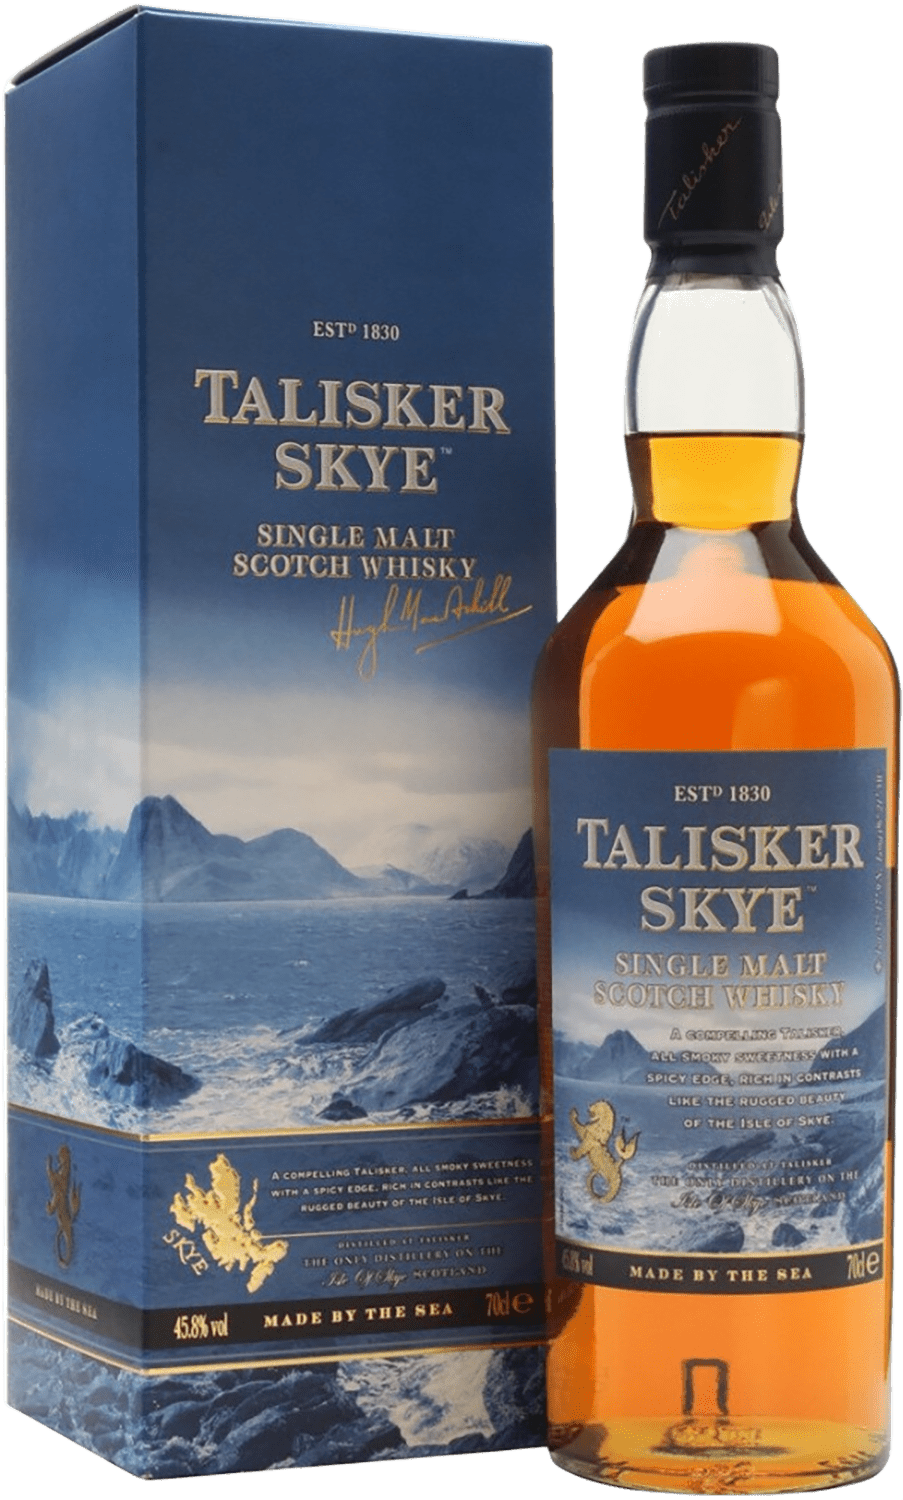 Talisker Skye Single Malt Scotch Whisky (gift box) talisker 18 years old single malt scotch whisky gift box